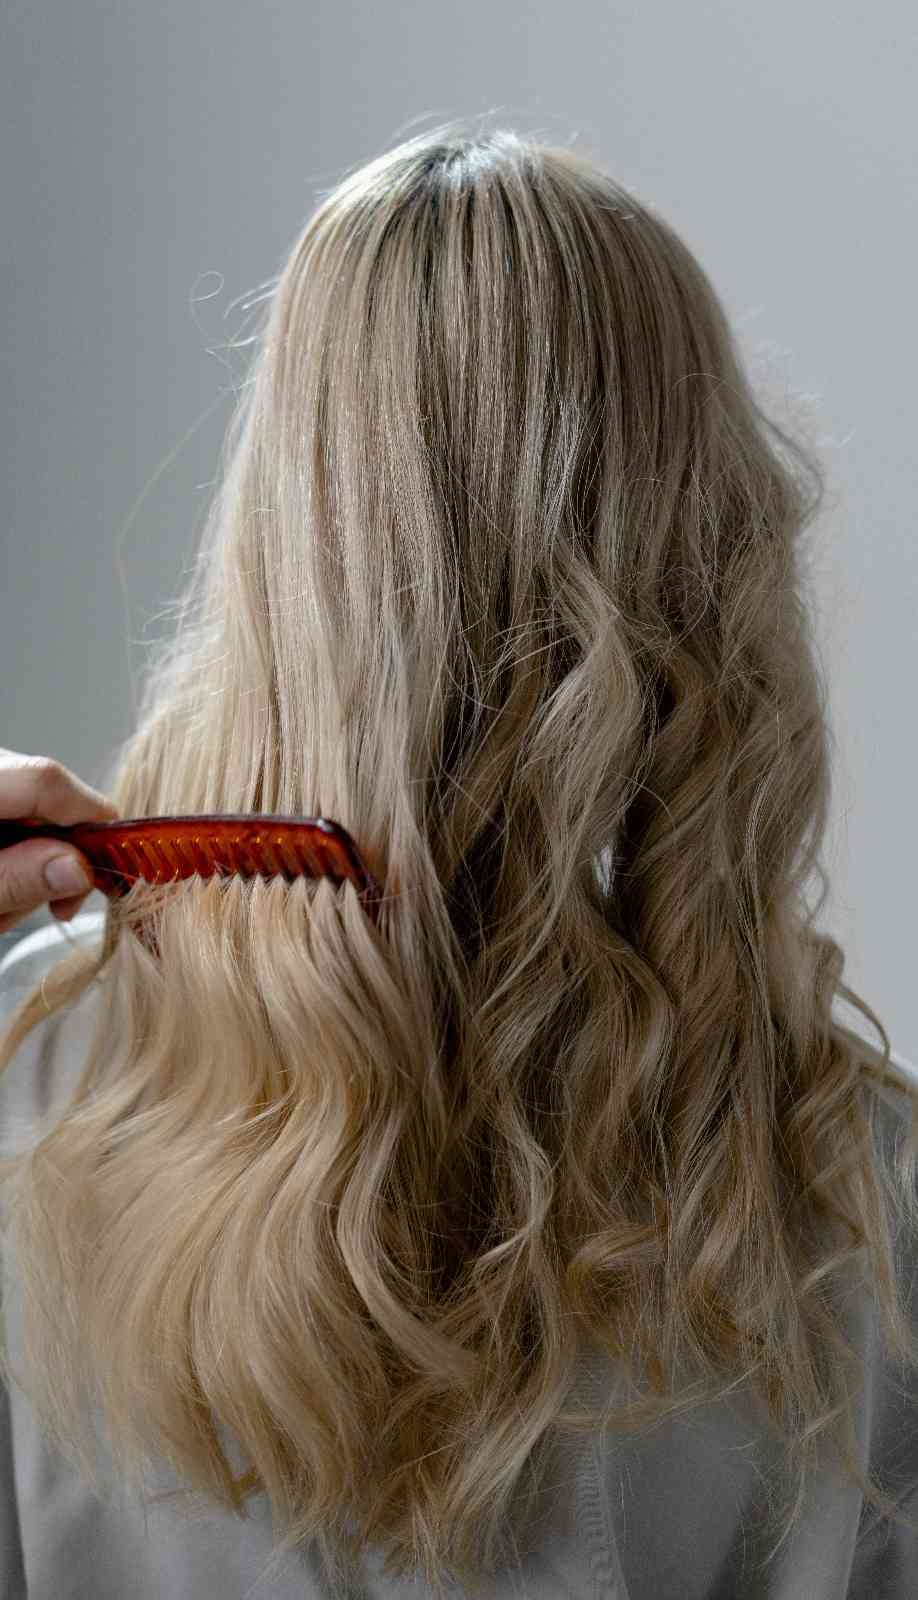 “Kök hücre tedavisiyle saç dökülmesini durdurulabilir”